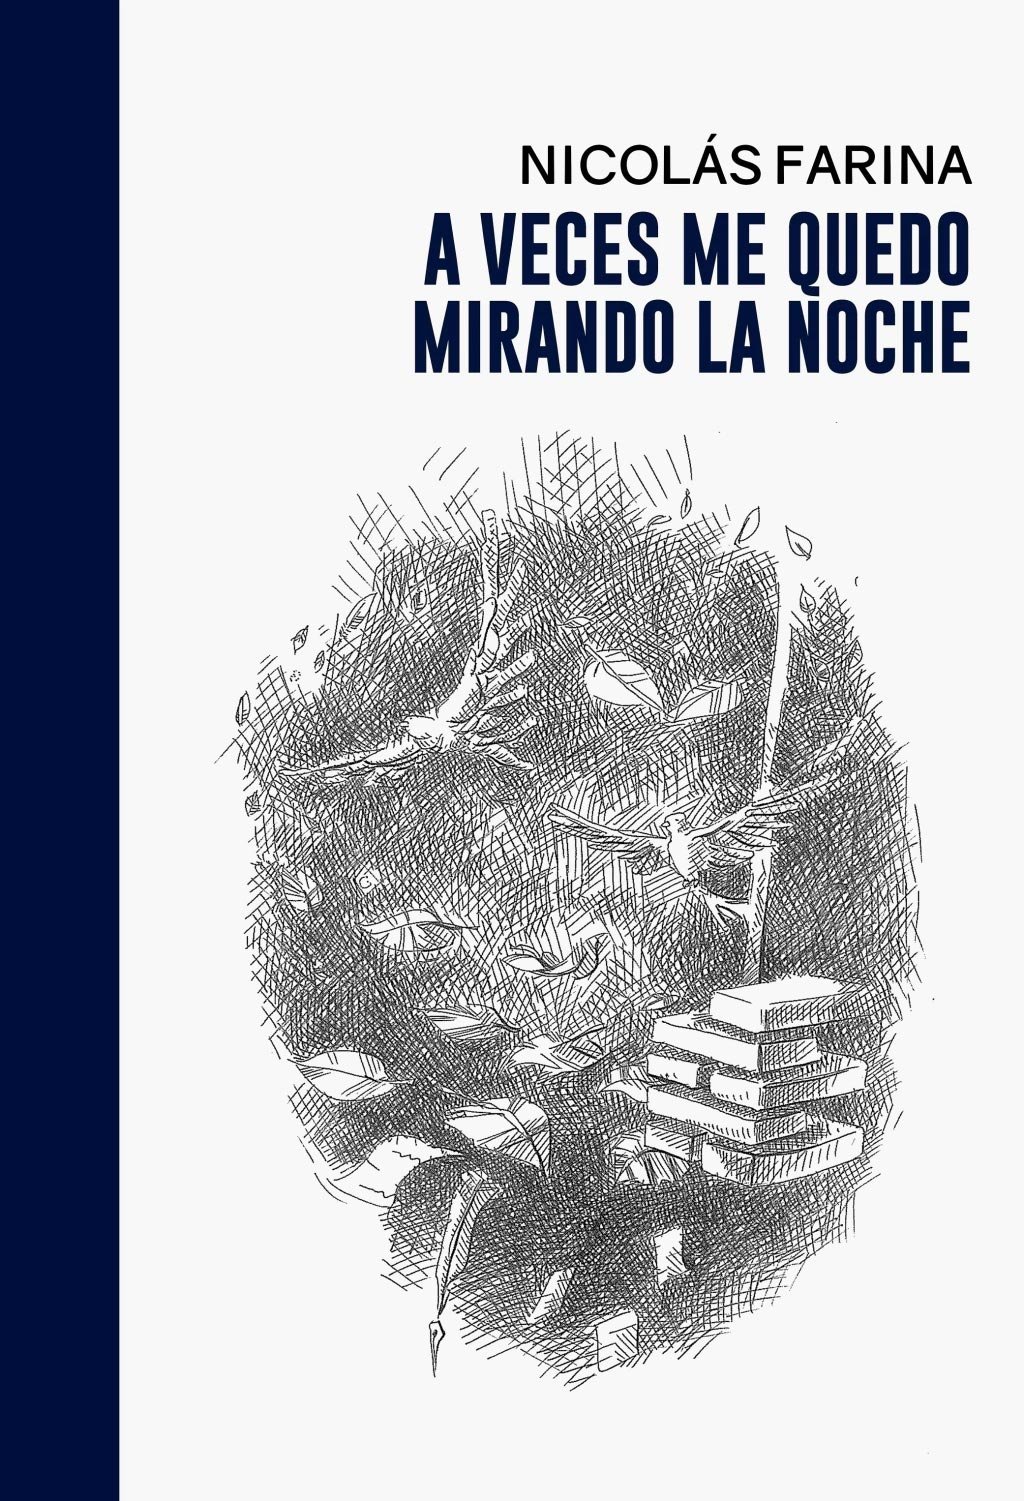 El lapridense Nicolás Farina lanza su primer libro de poesía